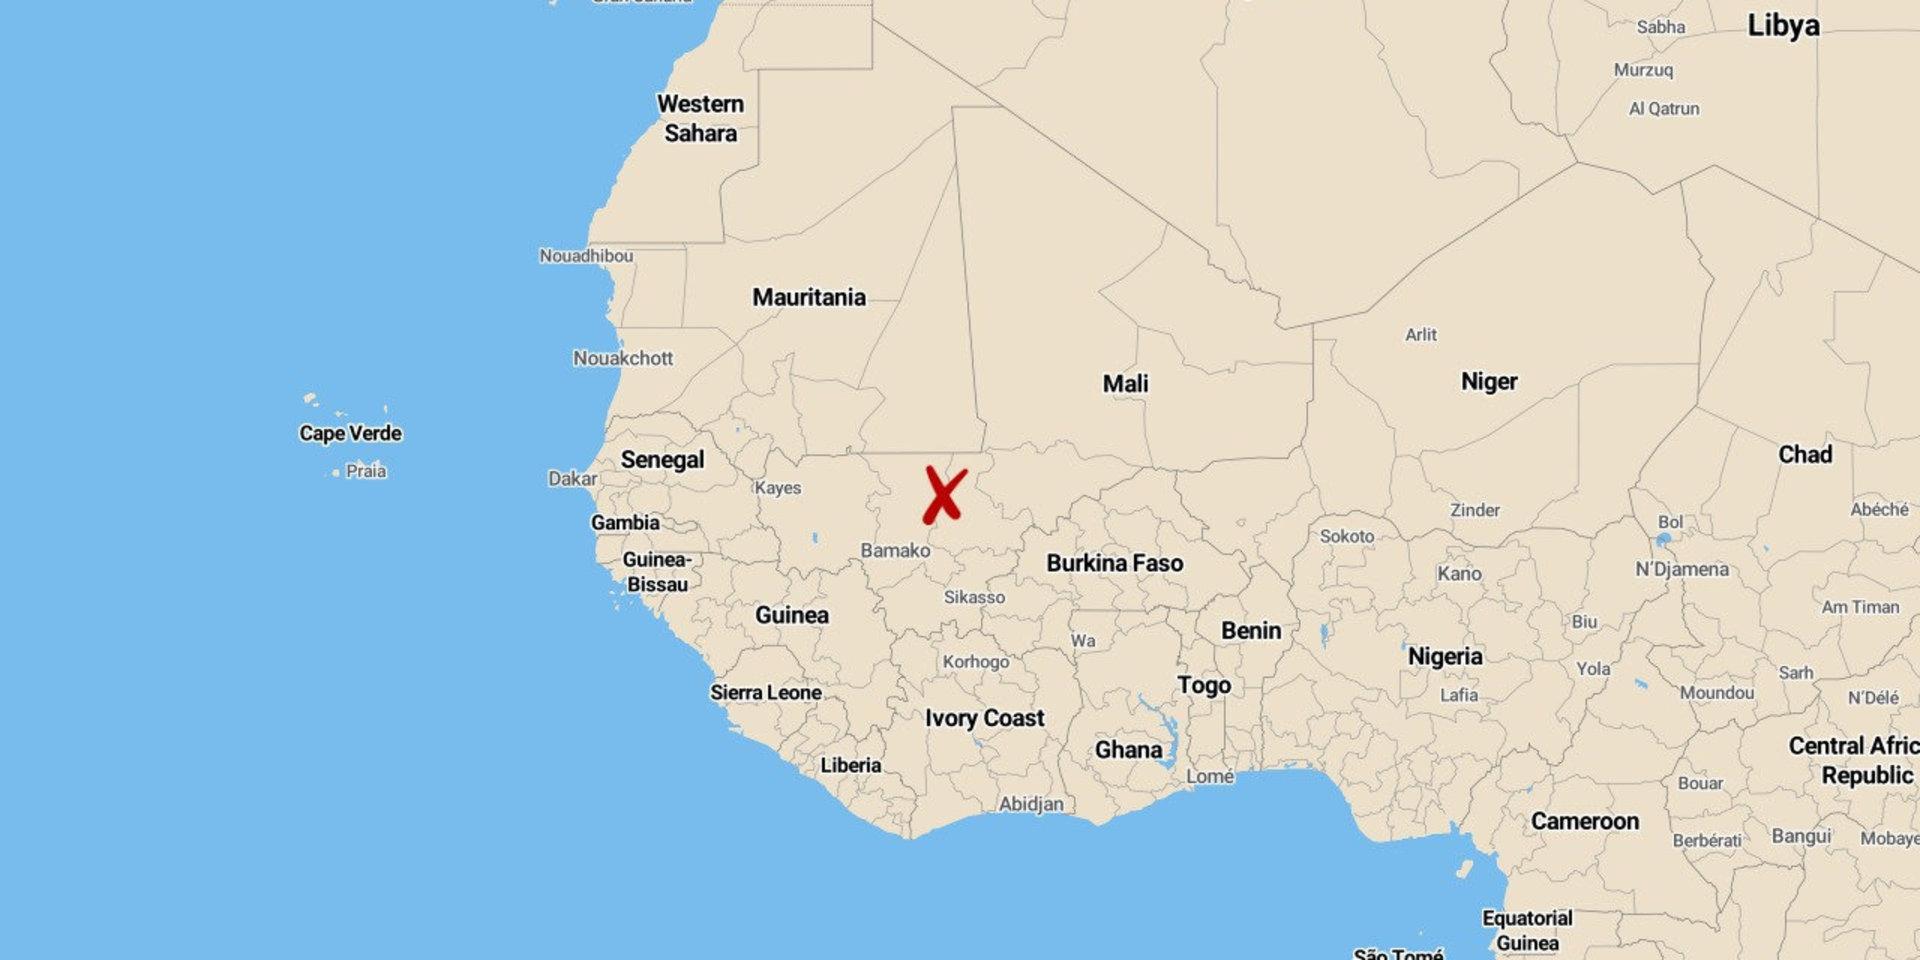 En polissoldat, gendarm, tillfångatogs vid en attack i Sokolo i Mali men lyckades sätta sig i säkerhet sedan han flytt och gått åtta mil till fots genom huvudsakligen ökenterräng. 